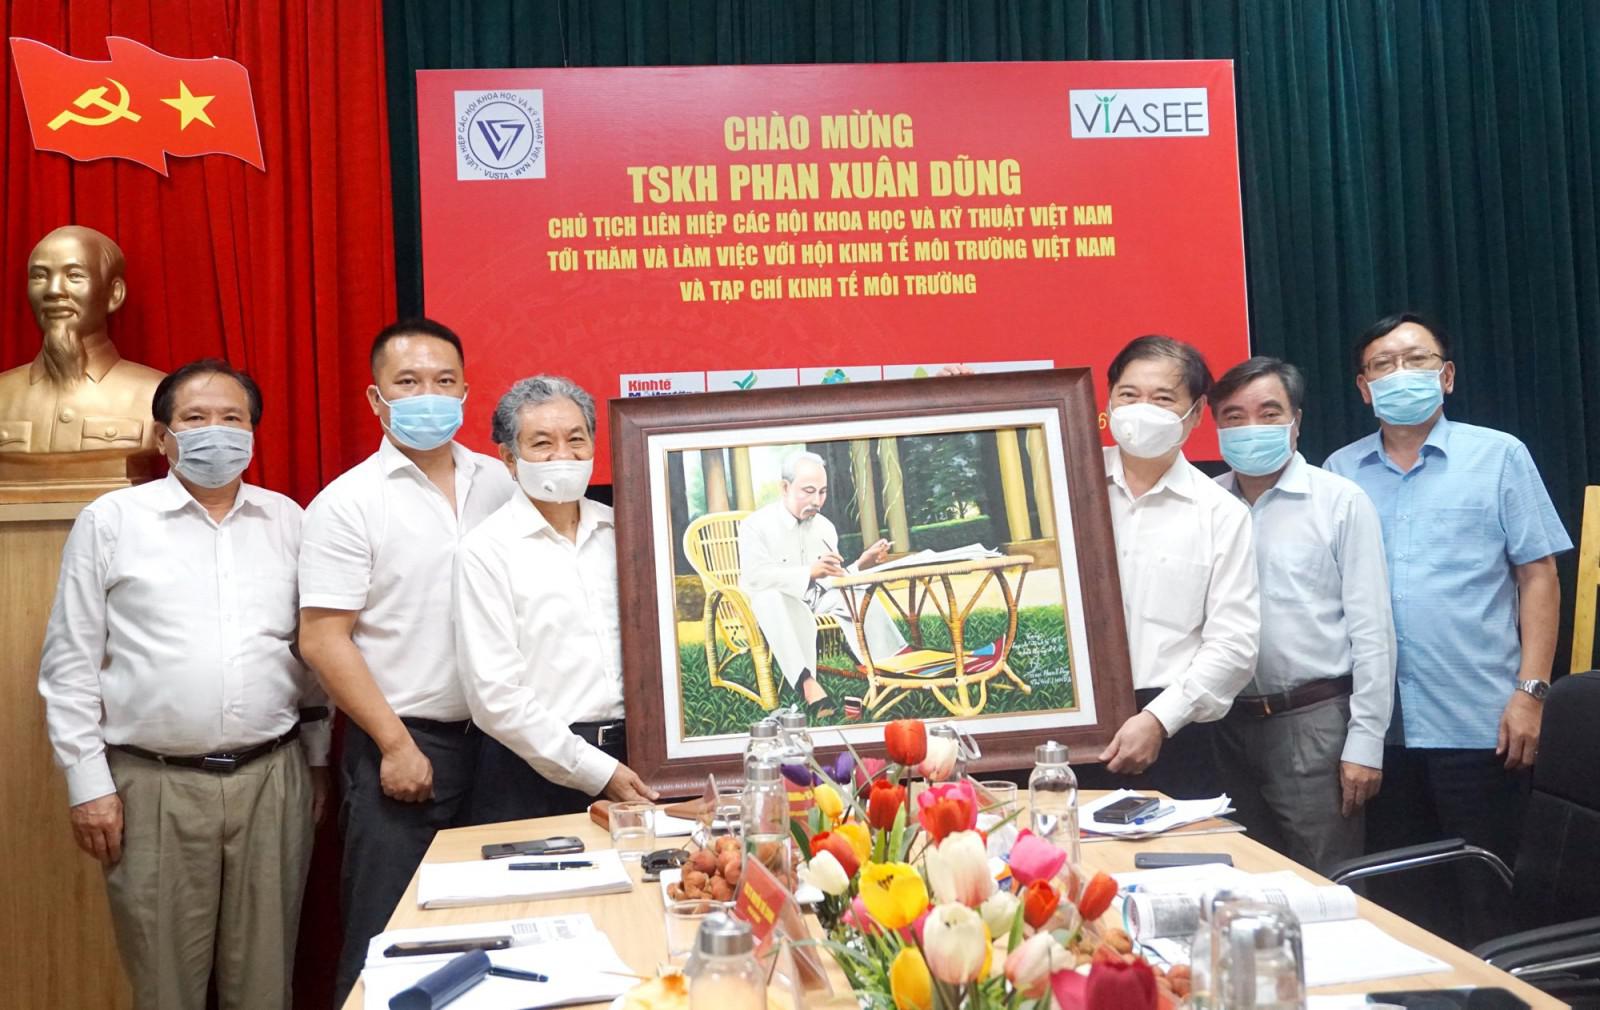 TSKH Phan Xuân Dũng, Chủ tịch VUSTA thăm, làm việc với VIASEE và TC Kinh tế Môi trường - 6